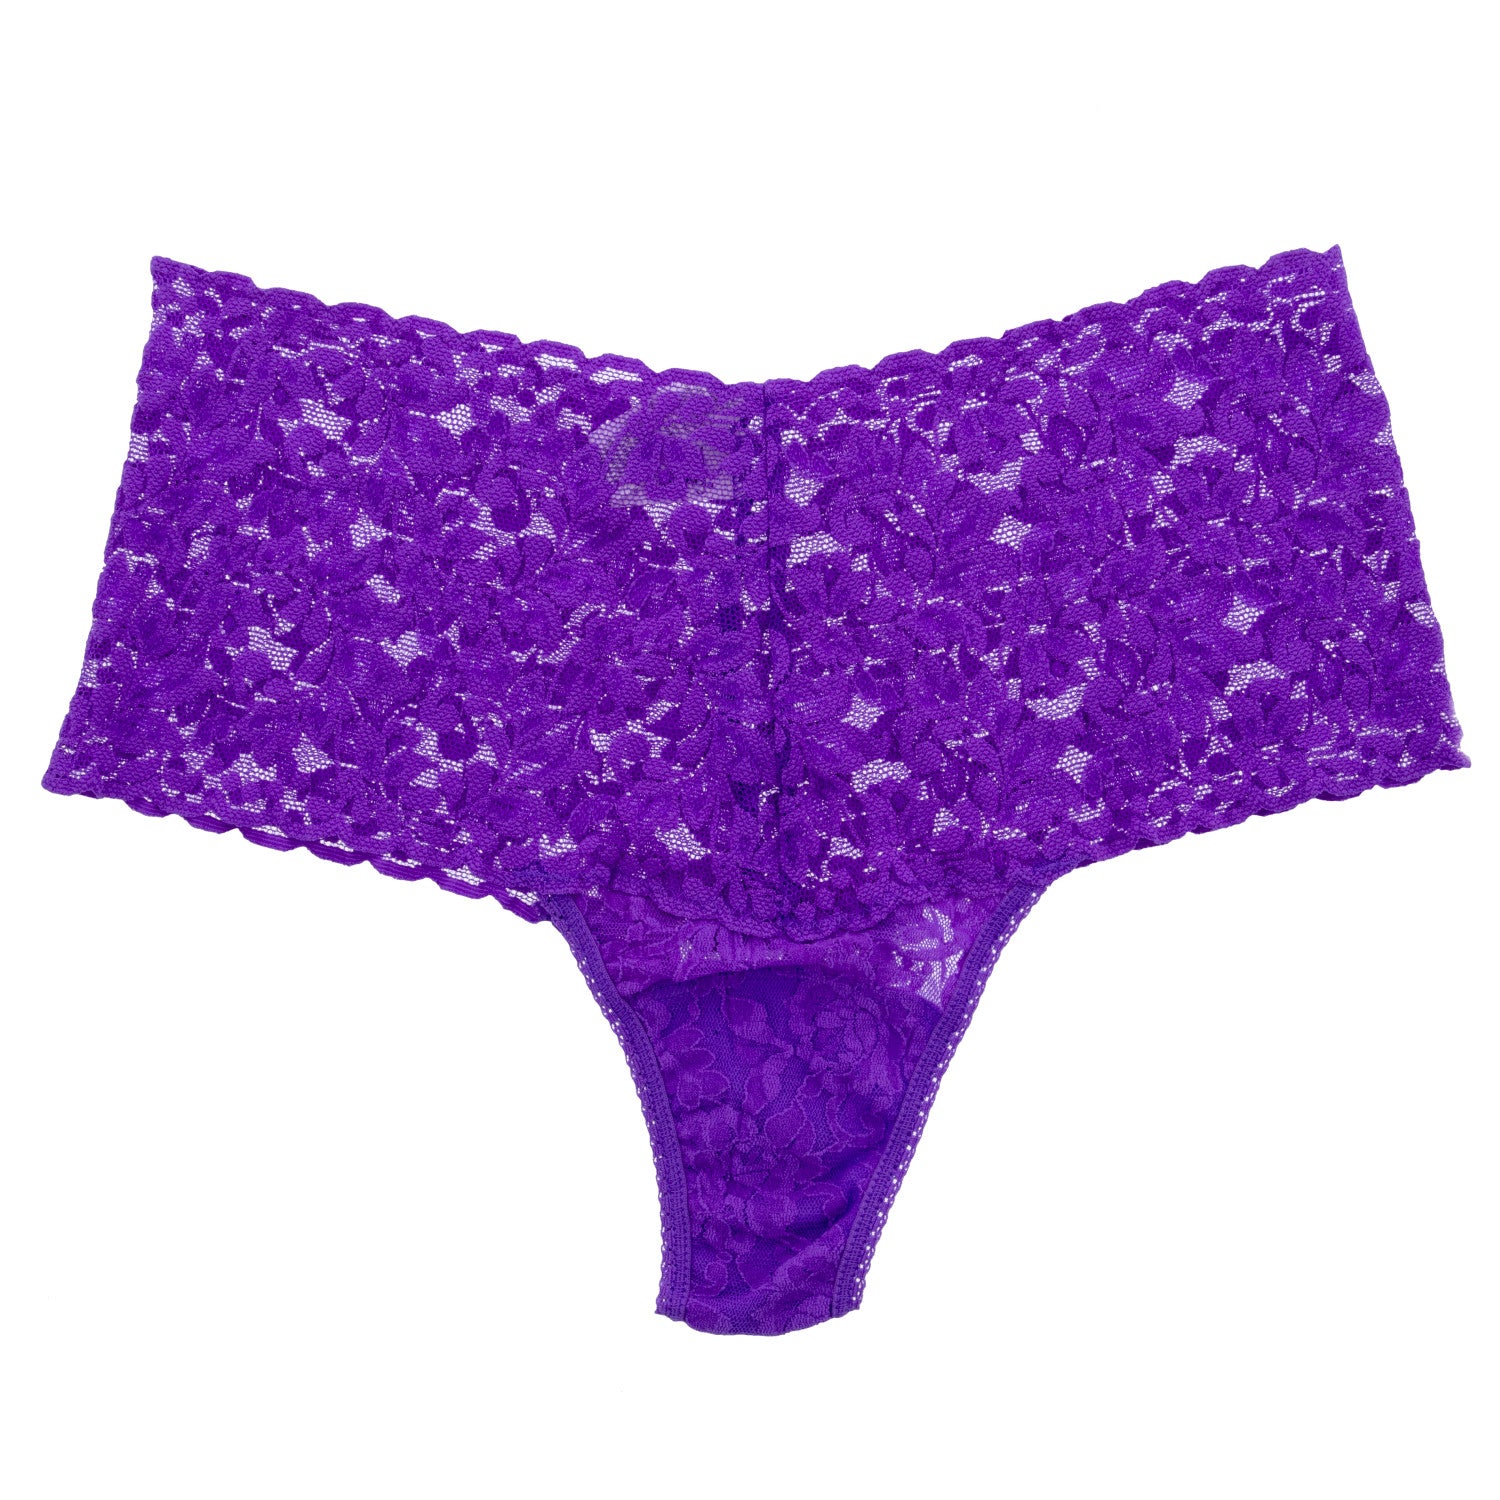 Retro Lace Thong Vivid Violet